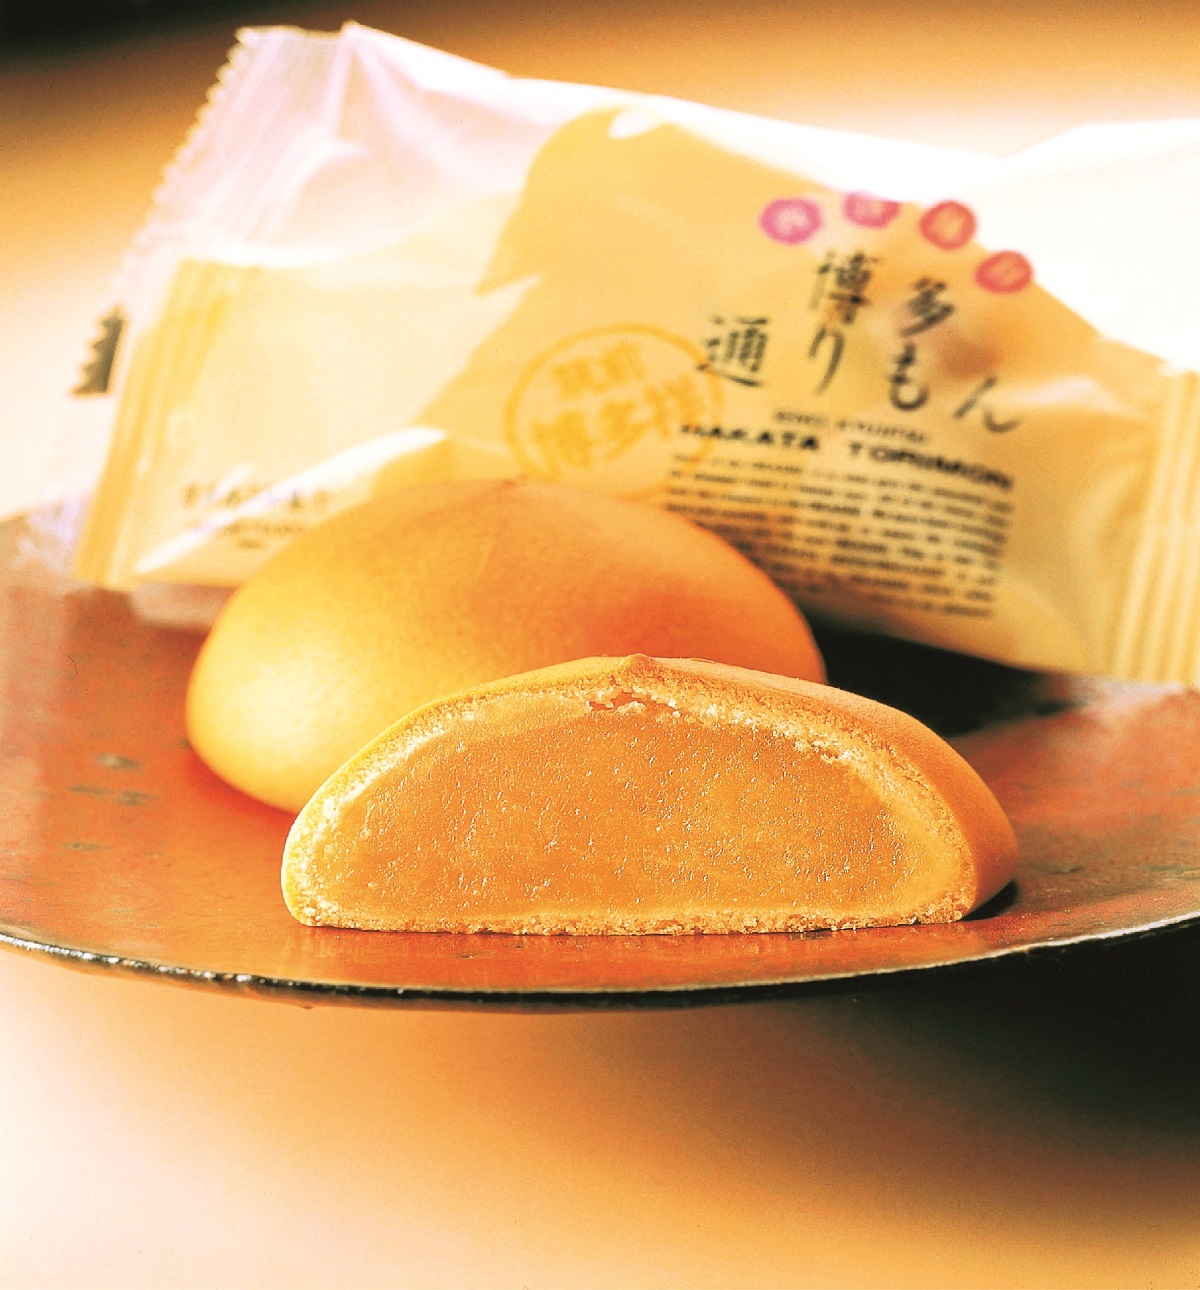 「Juicer Bar (ジューサーバー)」×「龍谷大学農学部」
龍谷大学農学部が育てたバターナッツかぼちゃを
使用したコラボ商品「かぼちゃスープ」を
1月28日（月）から期間限定で販売します。